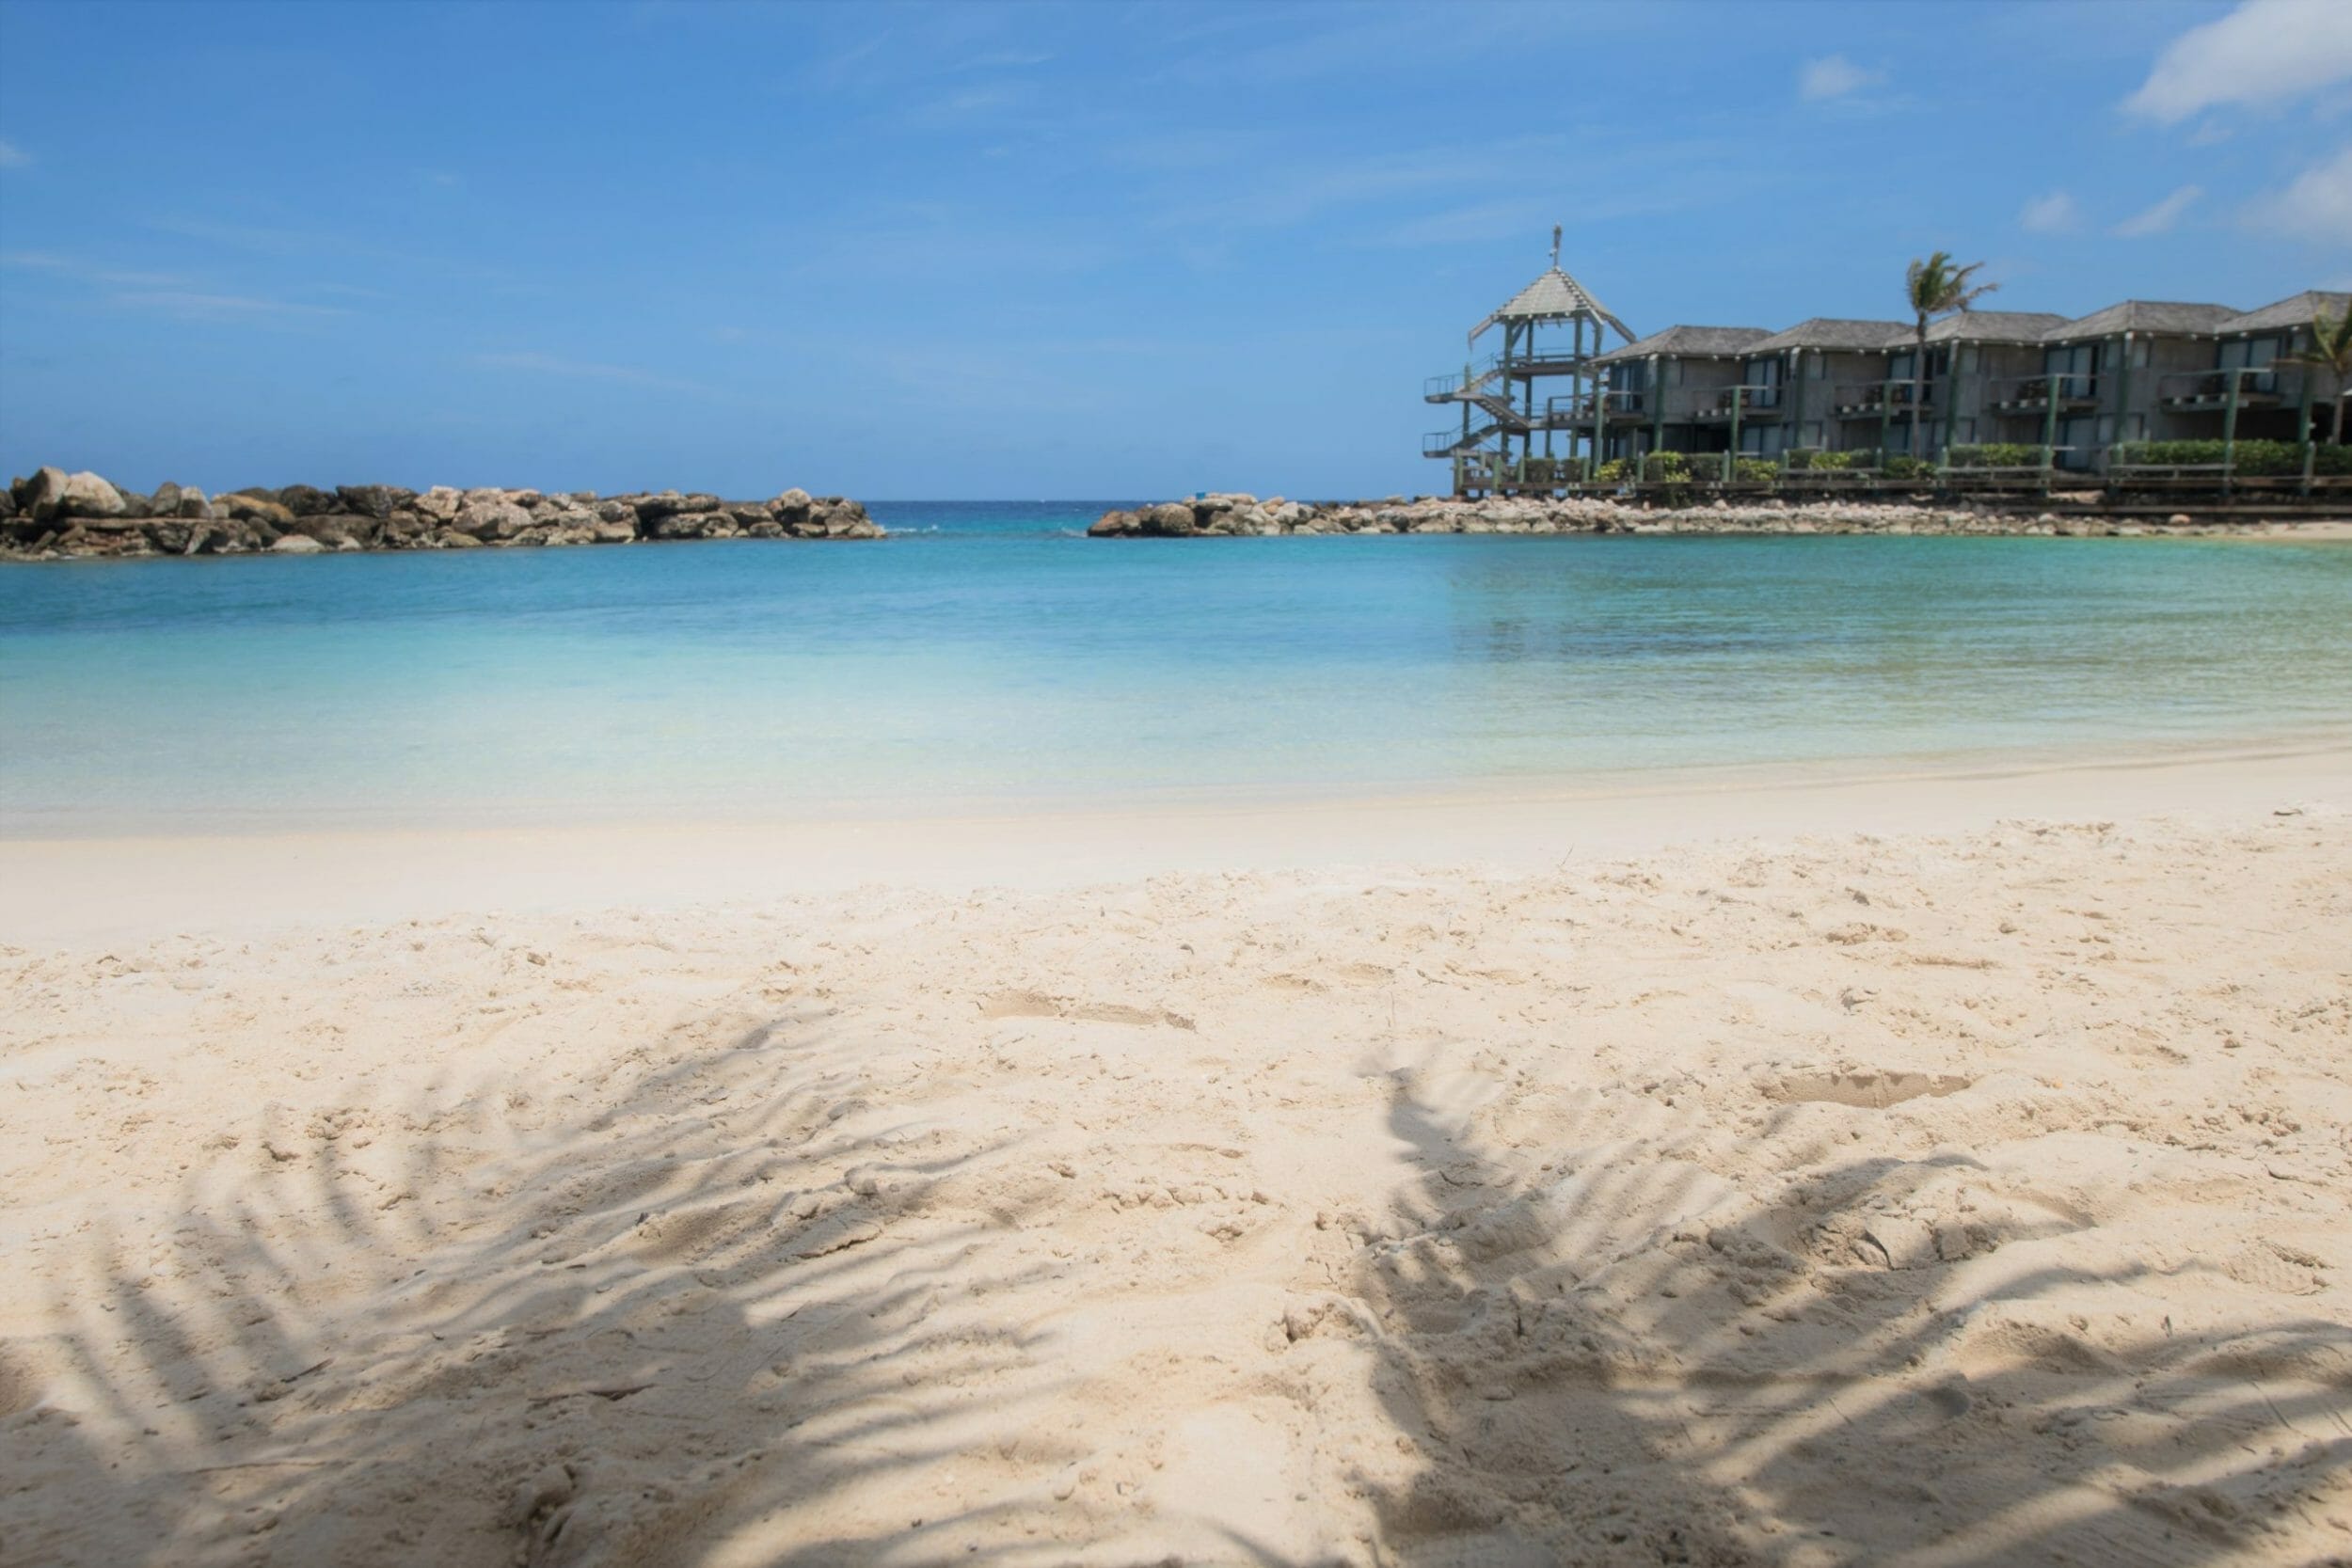 Avila Beach Hotel's Curacao beach - a tranquil escape